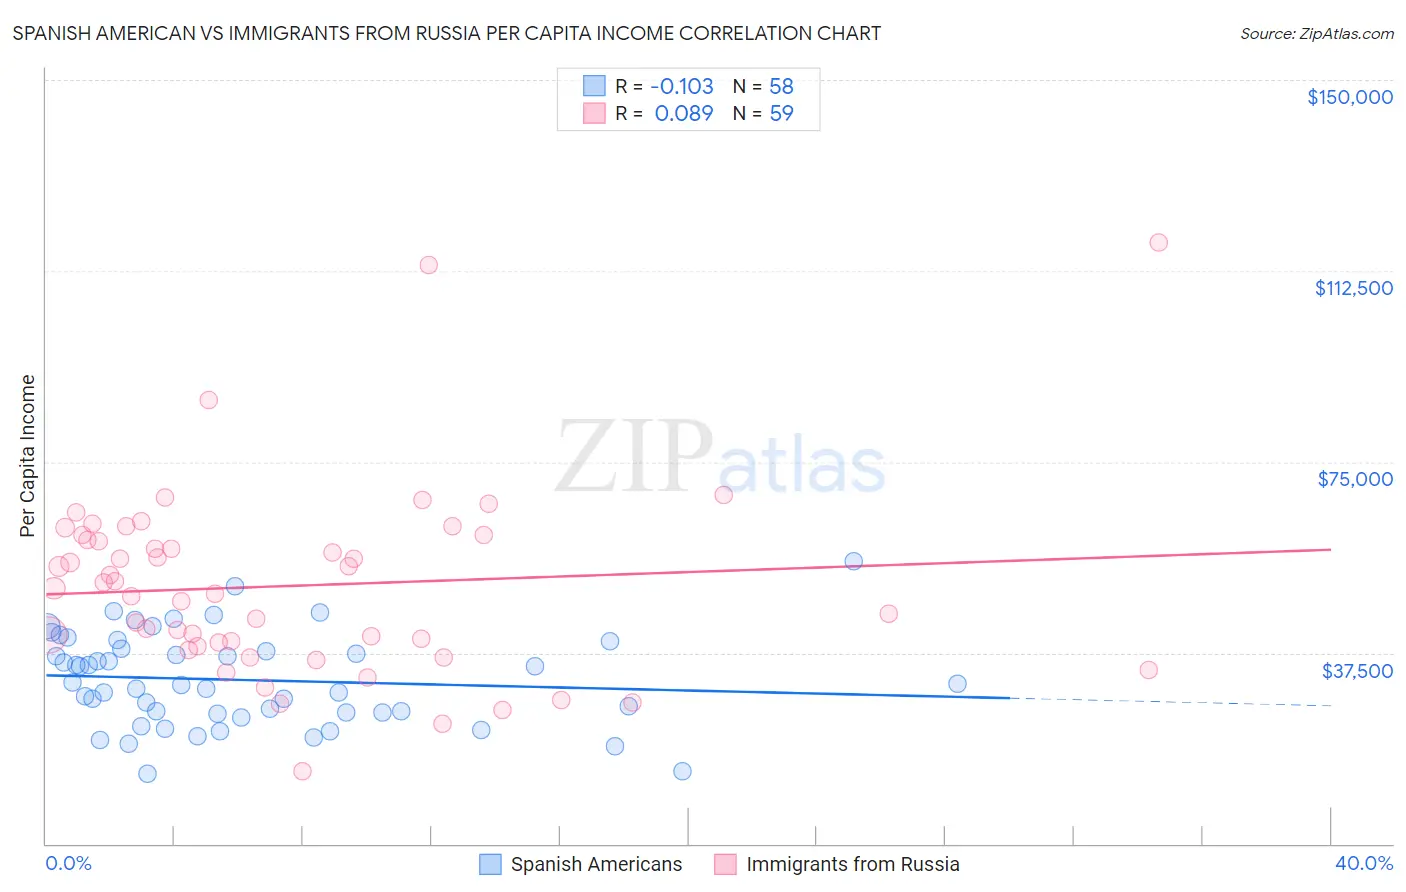 Spanish American vs Immigrants from Russia Per Capita Income